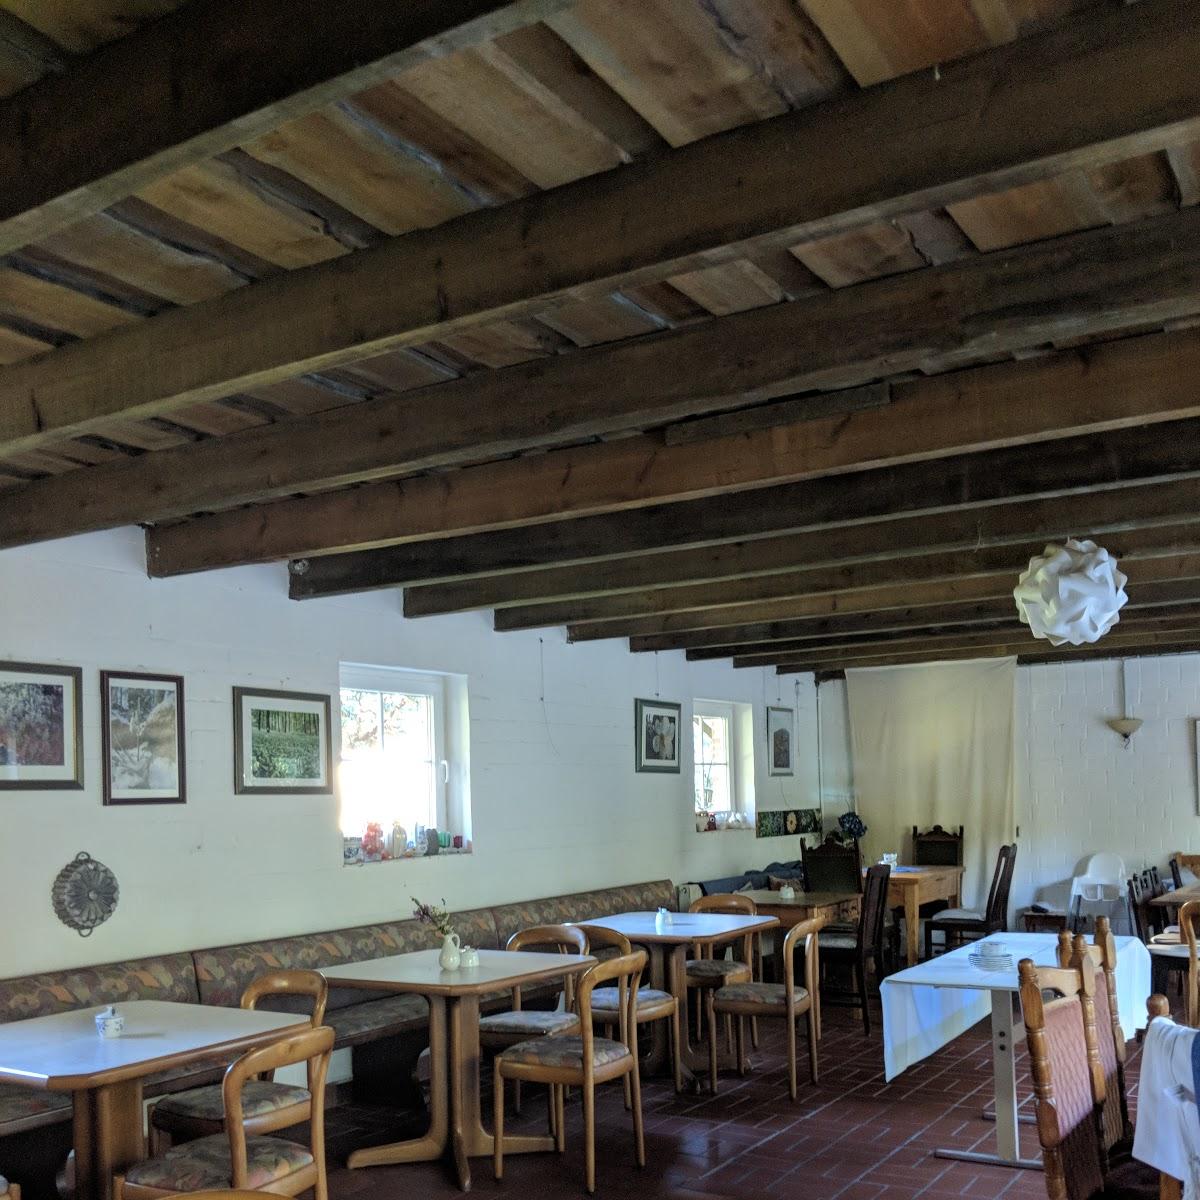 Restaurant "Café im Kräutergarten" in Borgholzhausen